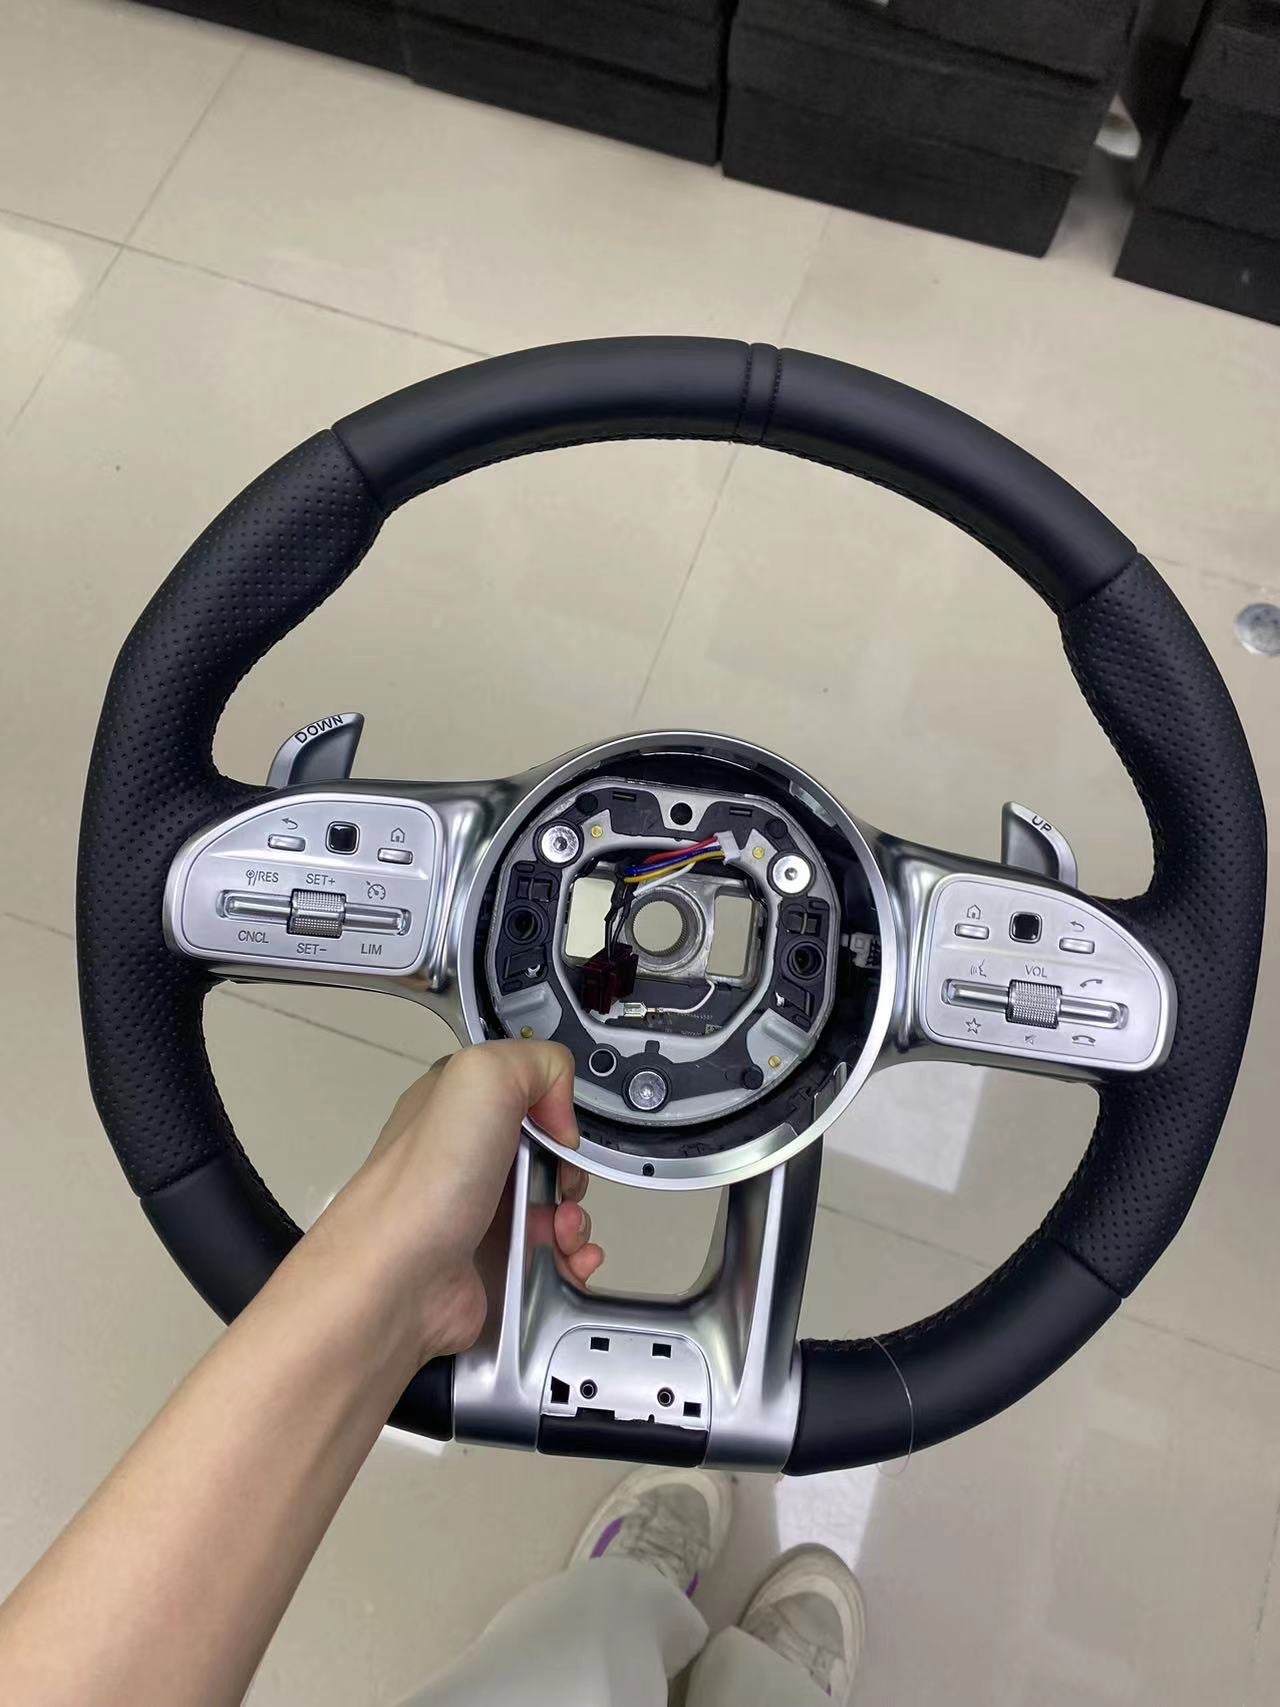 Mercedes G63 Steering Wheel - LED Display